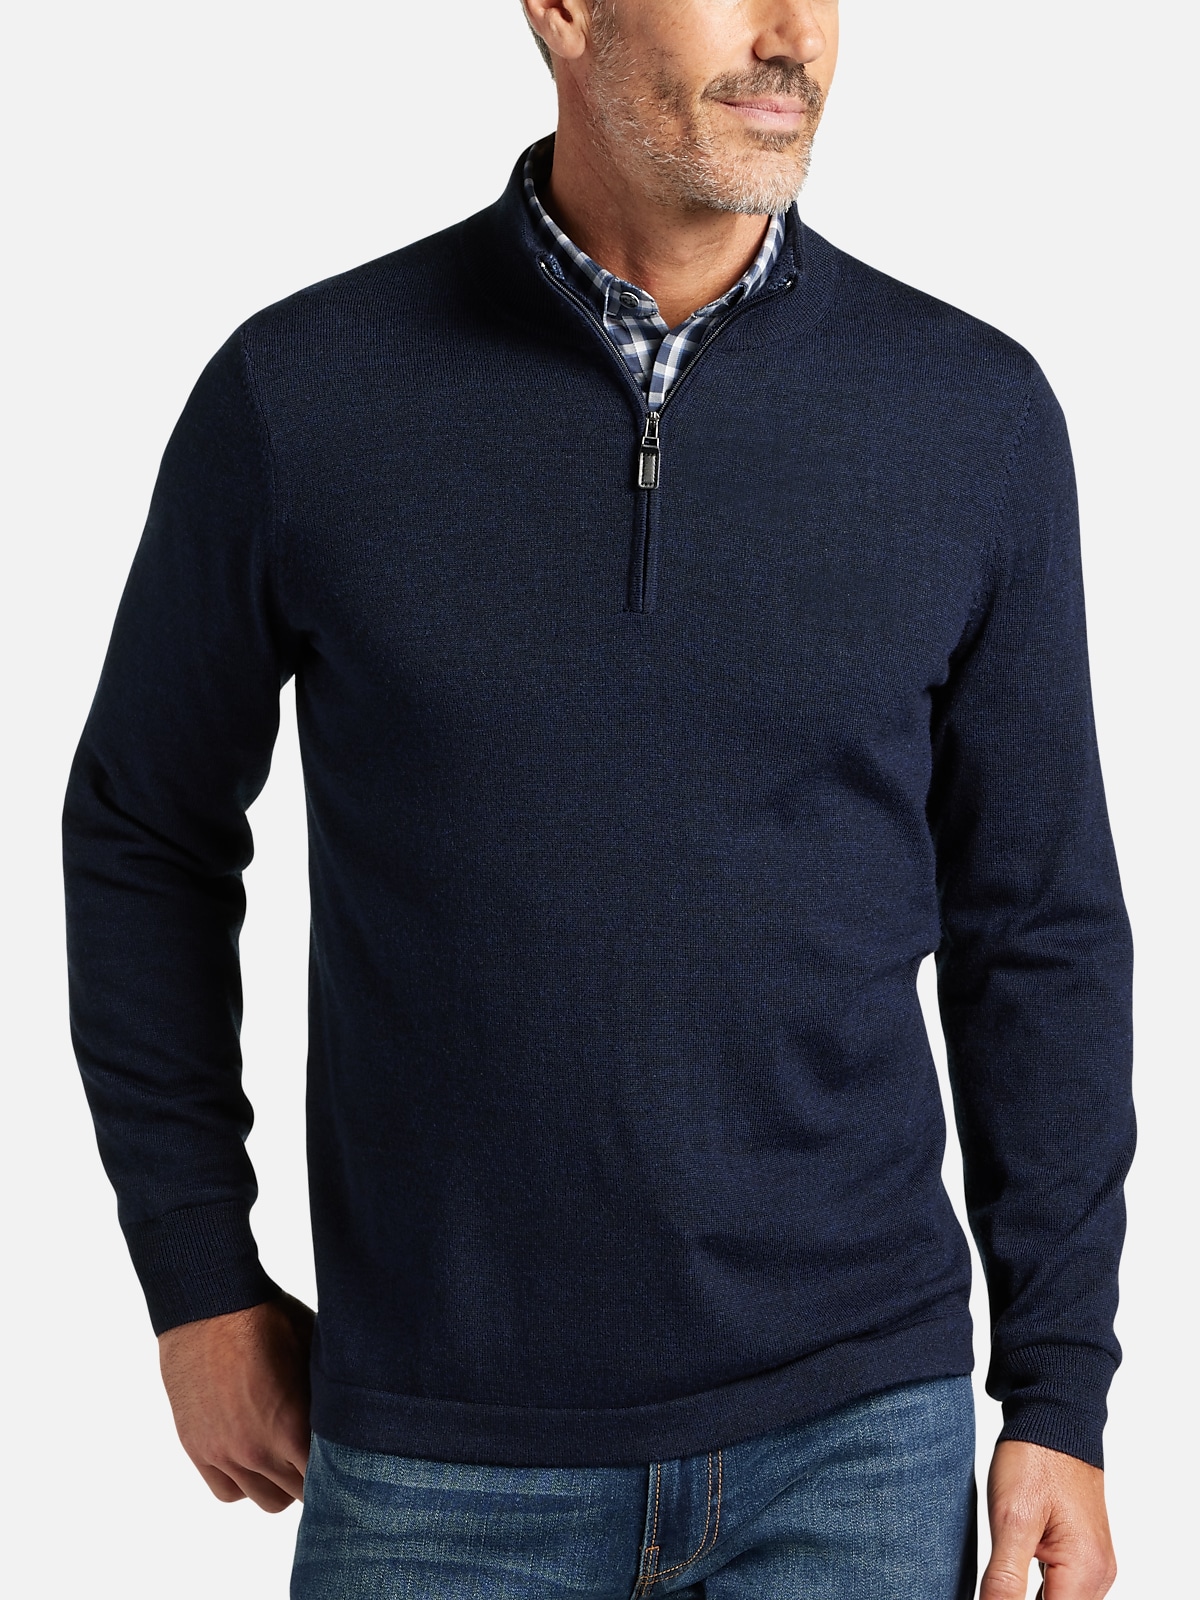 Joseph Abboud Modern Fit 1/4 Zip Merino Wool Sweater | All Sale| Men's ...